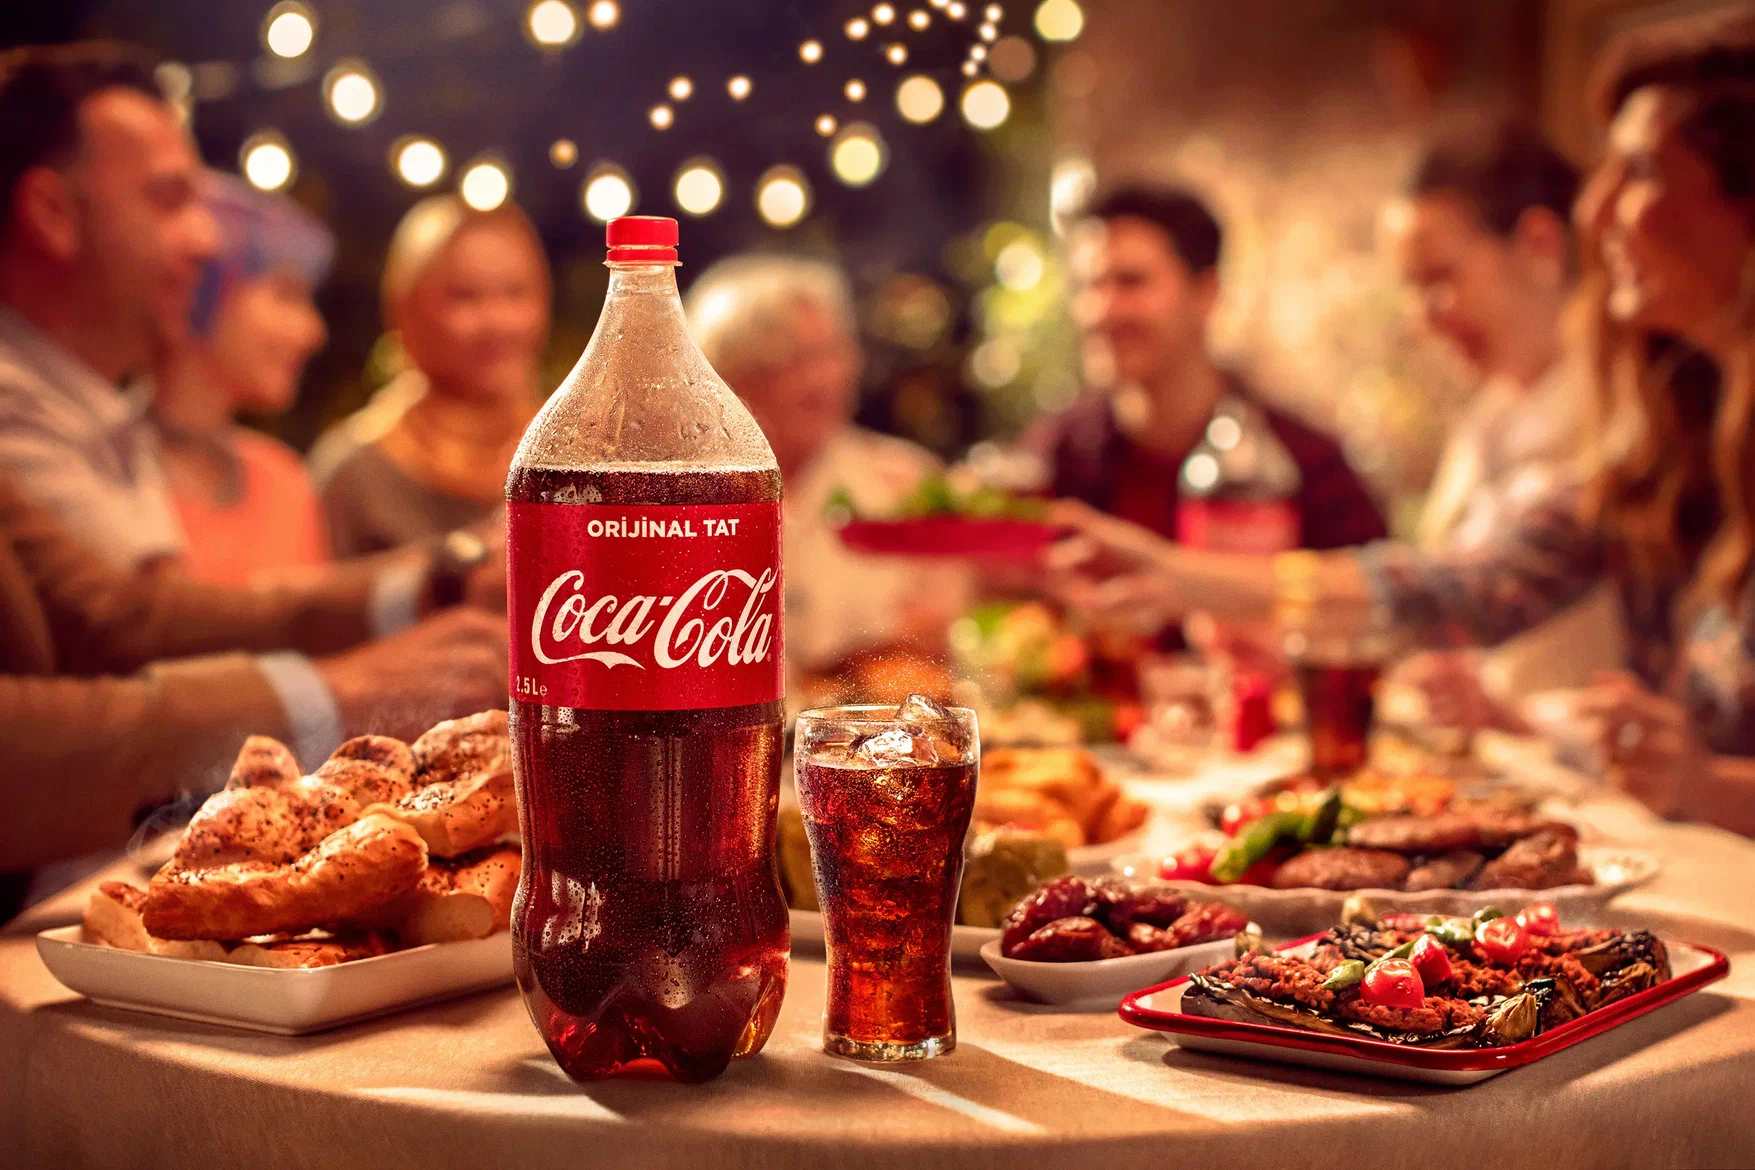 Реклама Coca-cola — это всегда чувство праздника, когда ты не одинок, рядом друзья, близкие, вкусная еда